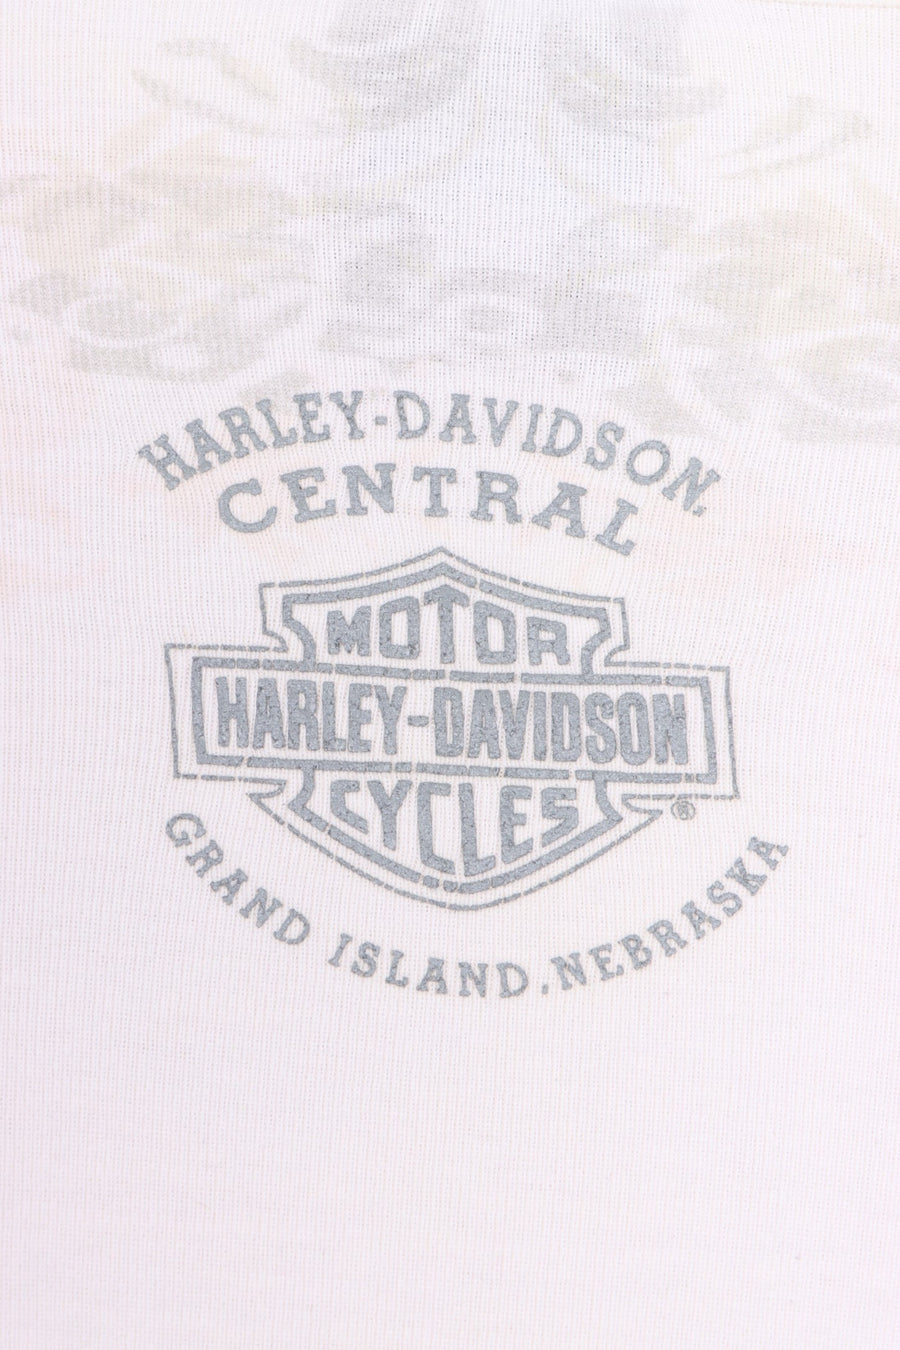 HARLEY DAVIDSON Embellished Baroque Long Sleeve T-Shirt (S)